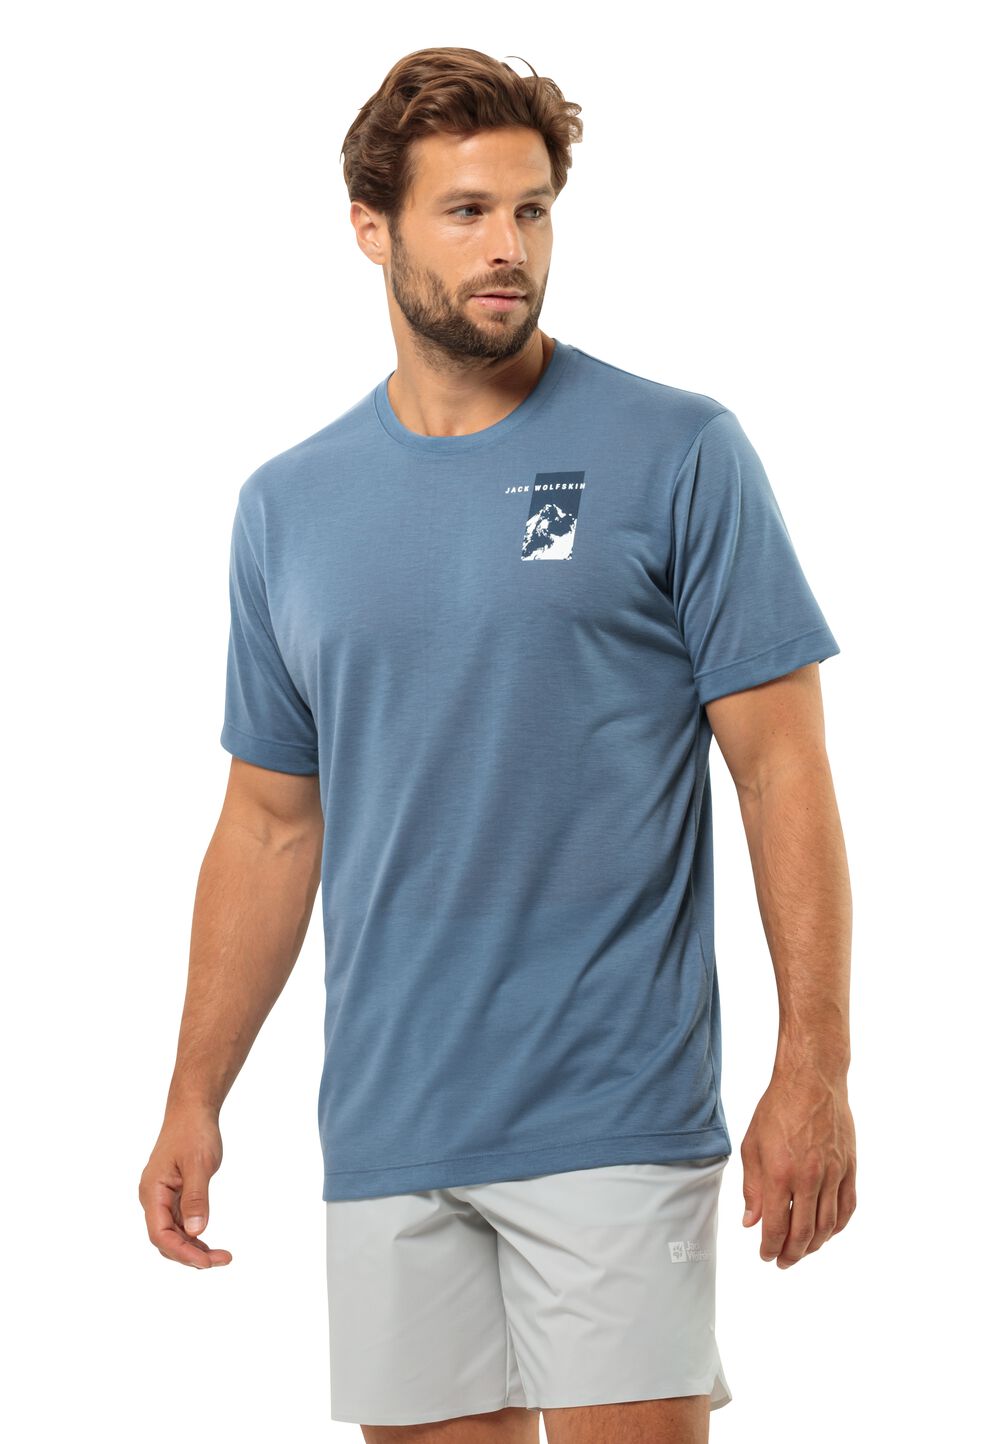 Jack Wolfskin Vonnan S S Graphic T-Shirt Men Functioneel shirt Heren M elemental blue elemental blue